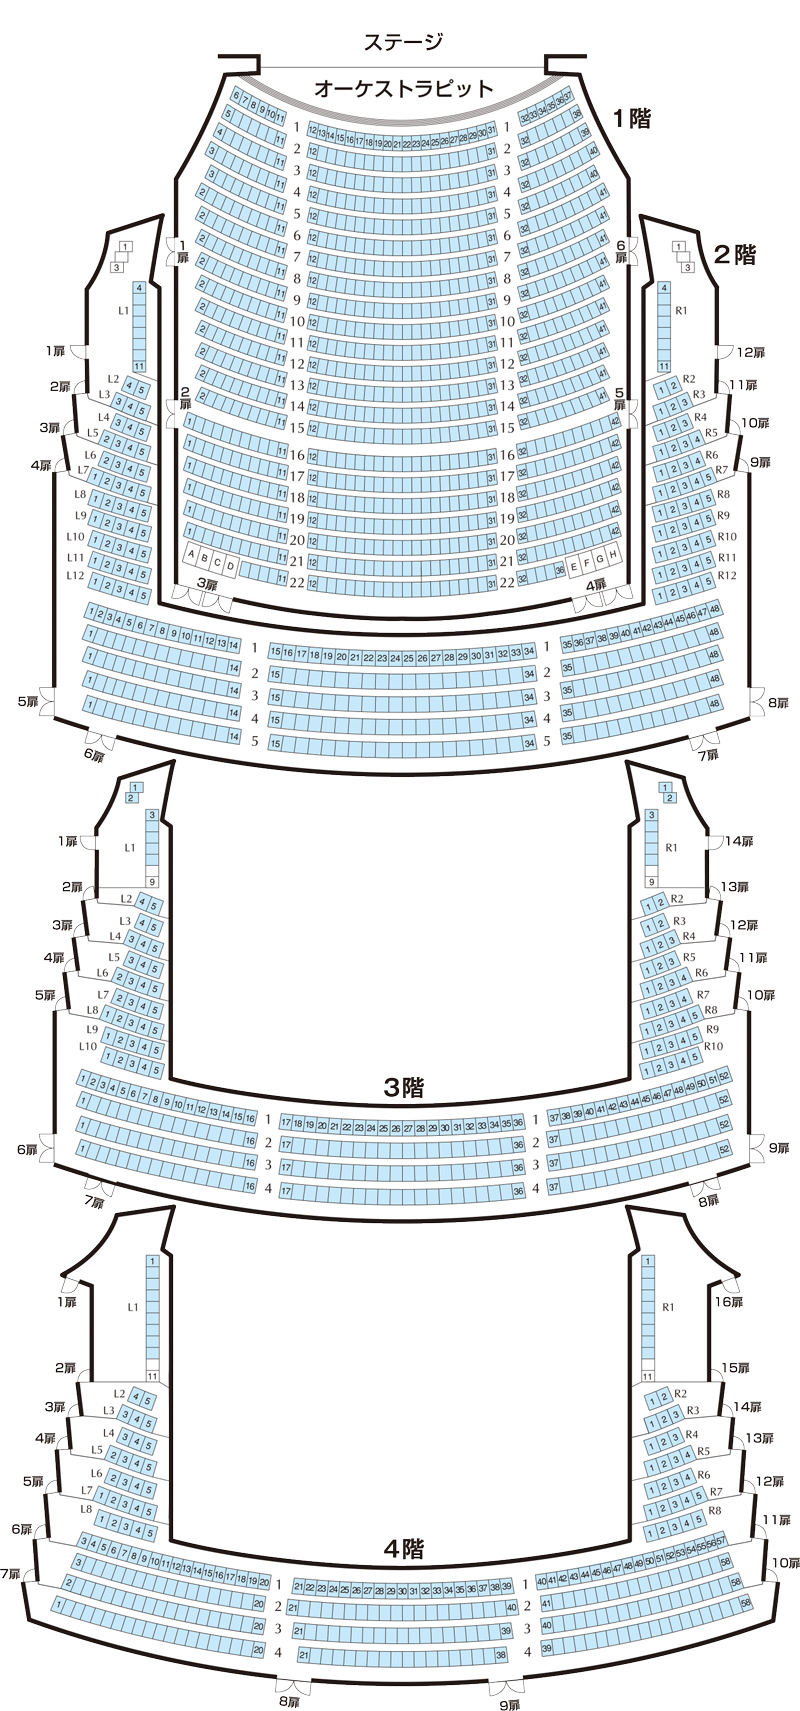 オペラパレス座席表